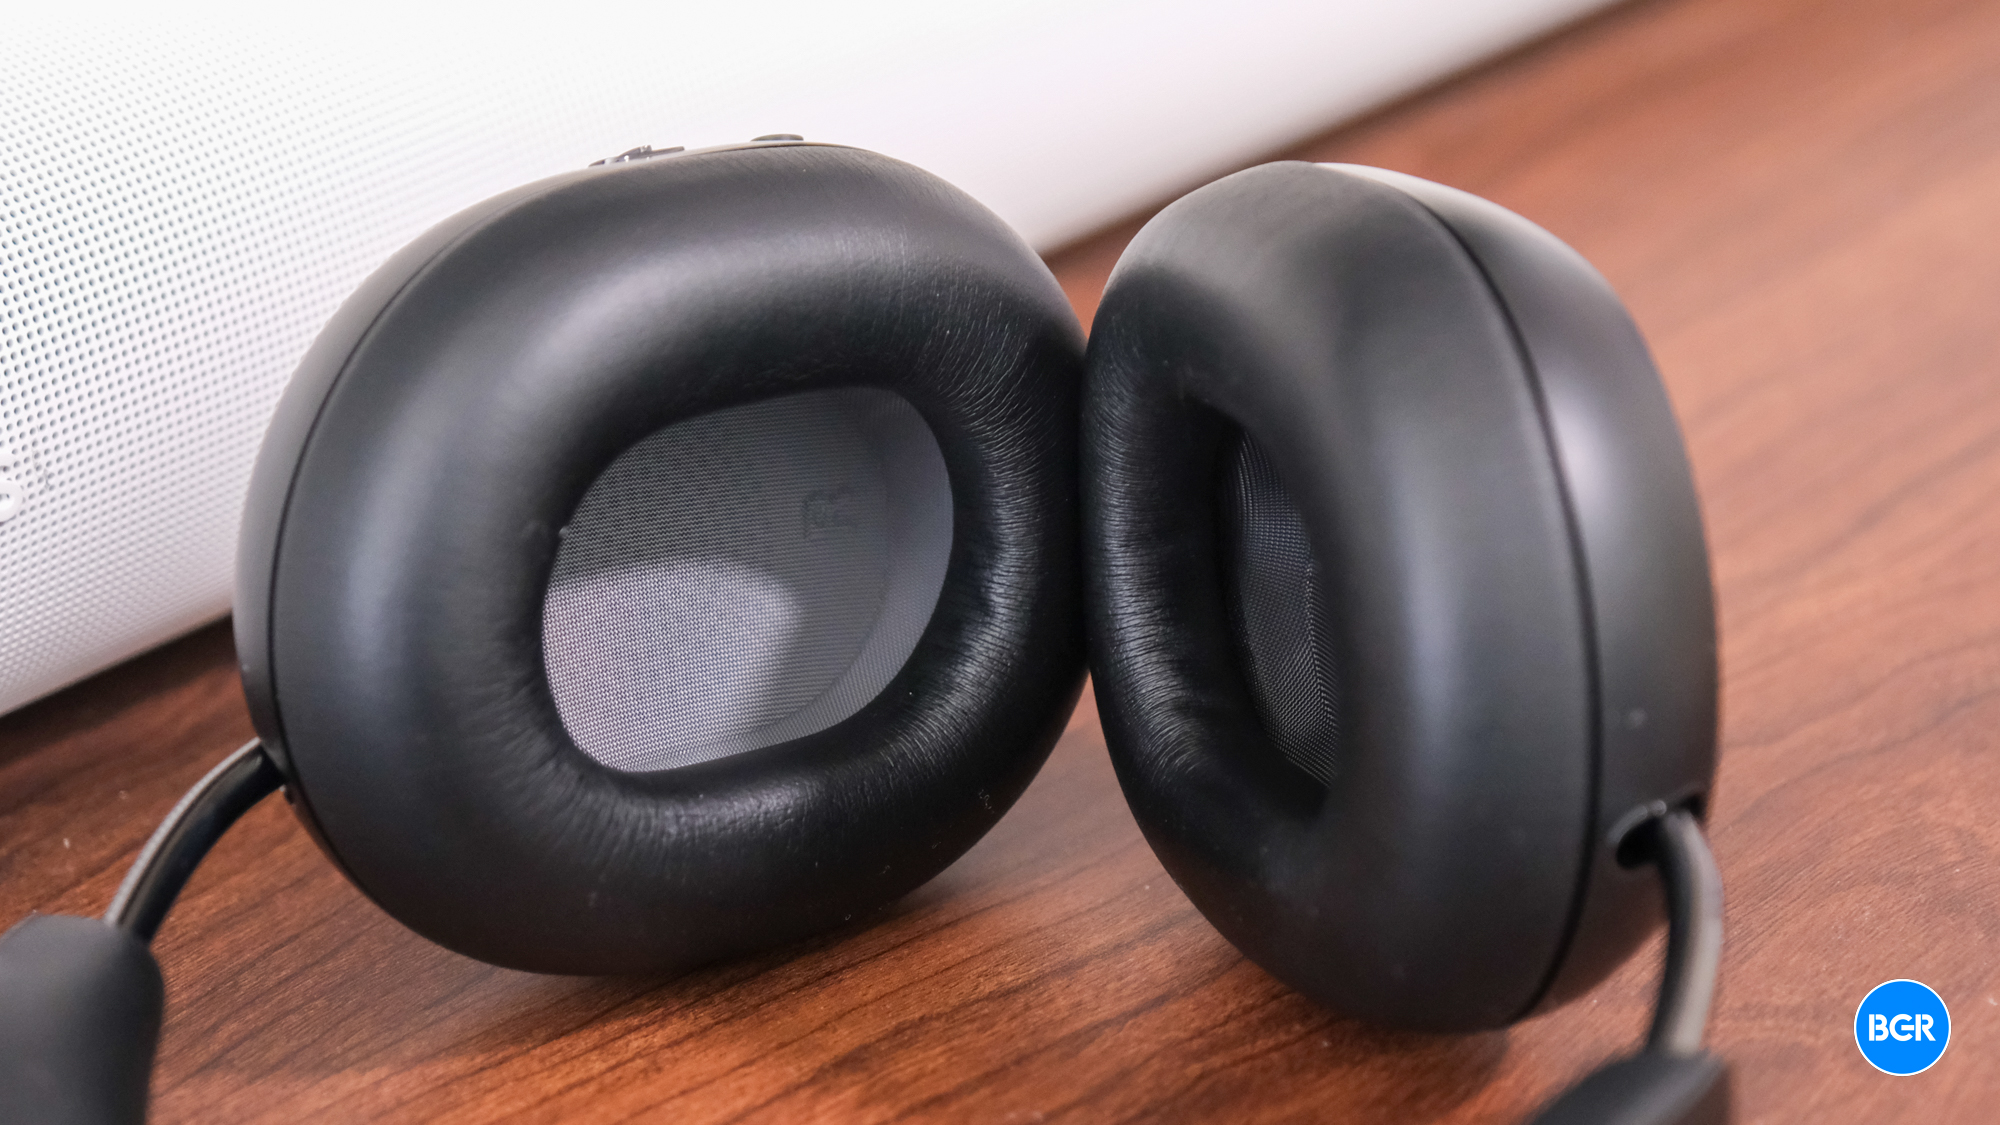 Ear pads on the Sonos Ace headphones